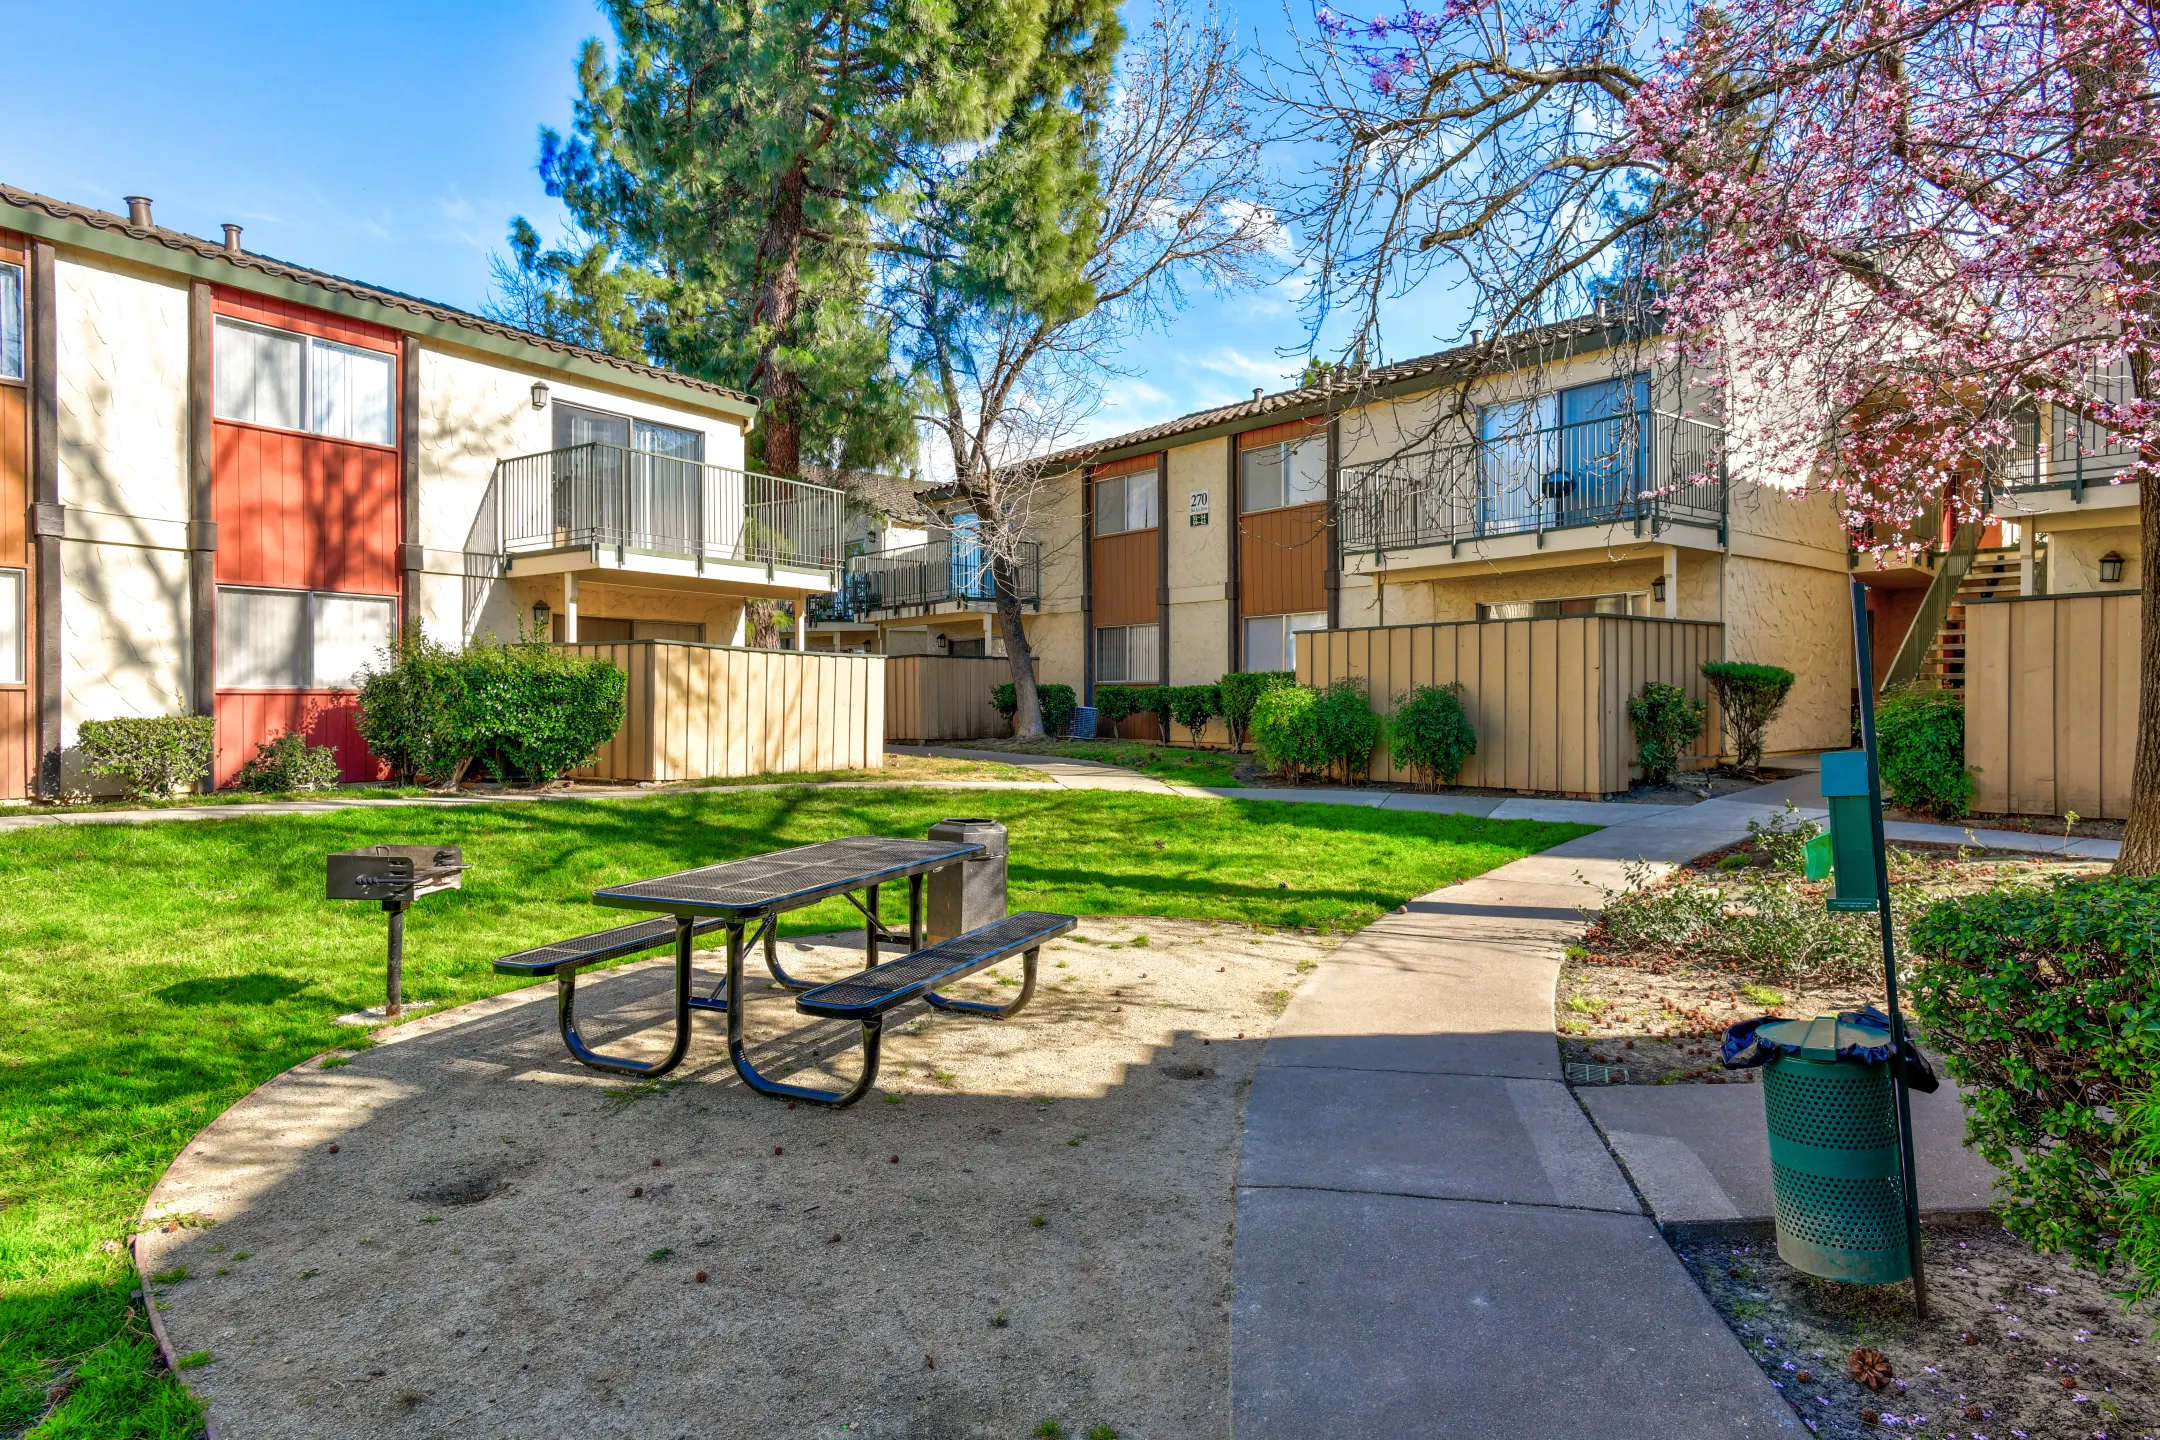 Building - Creekside Gardens Apartments - Vacaville, CA